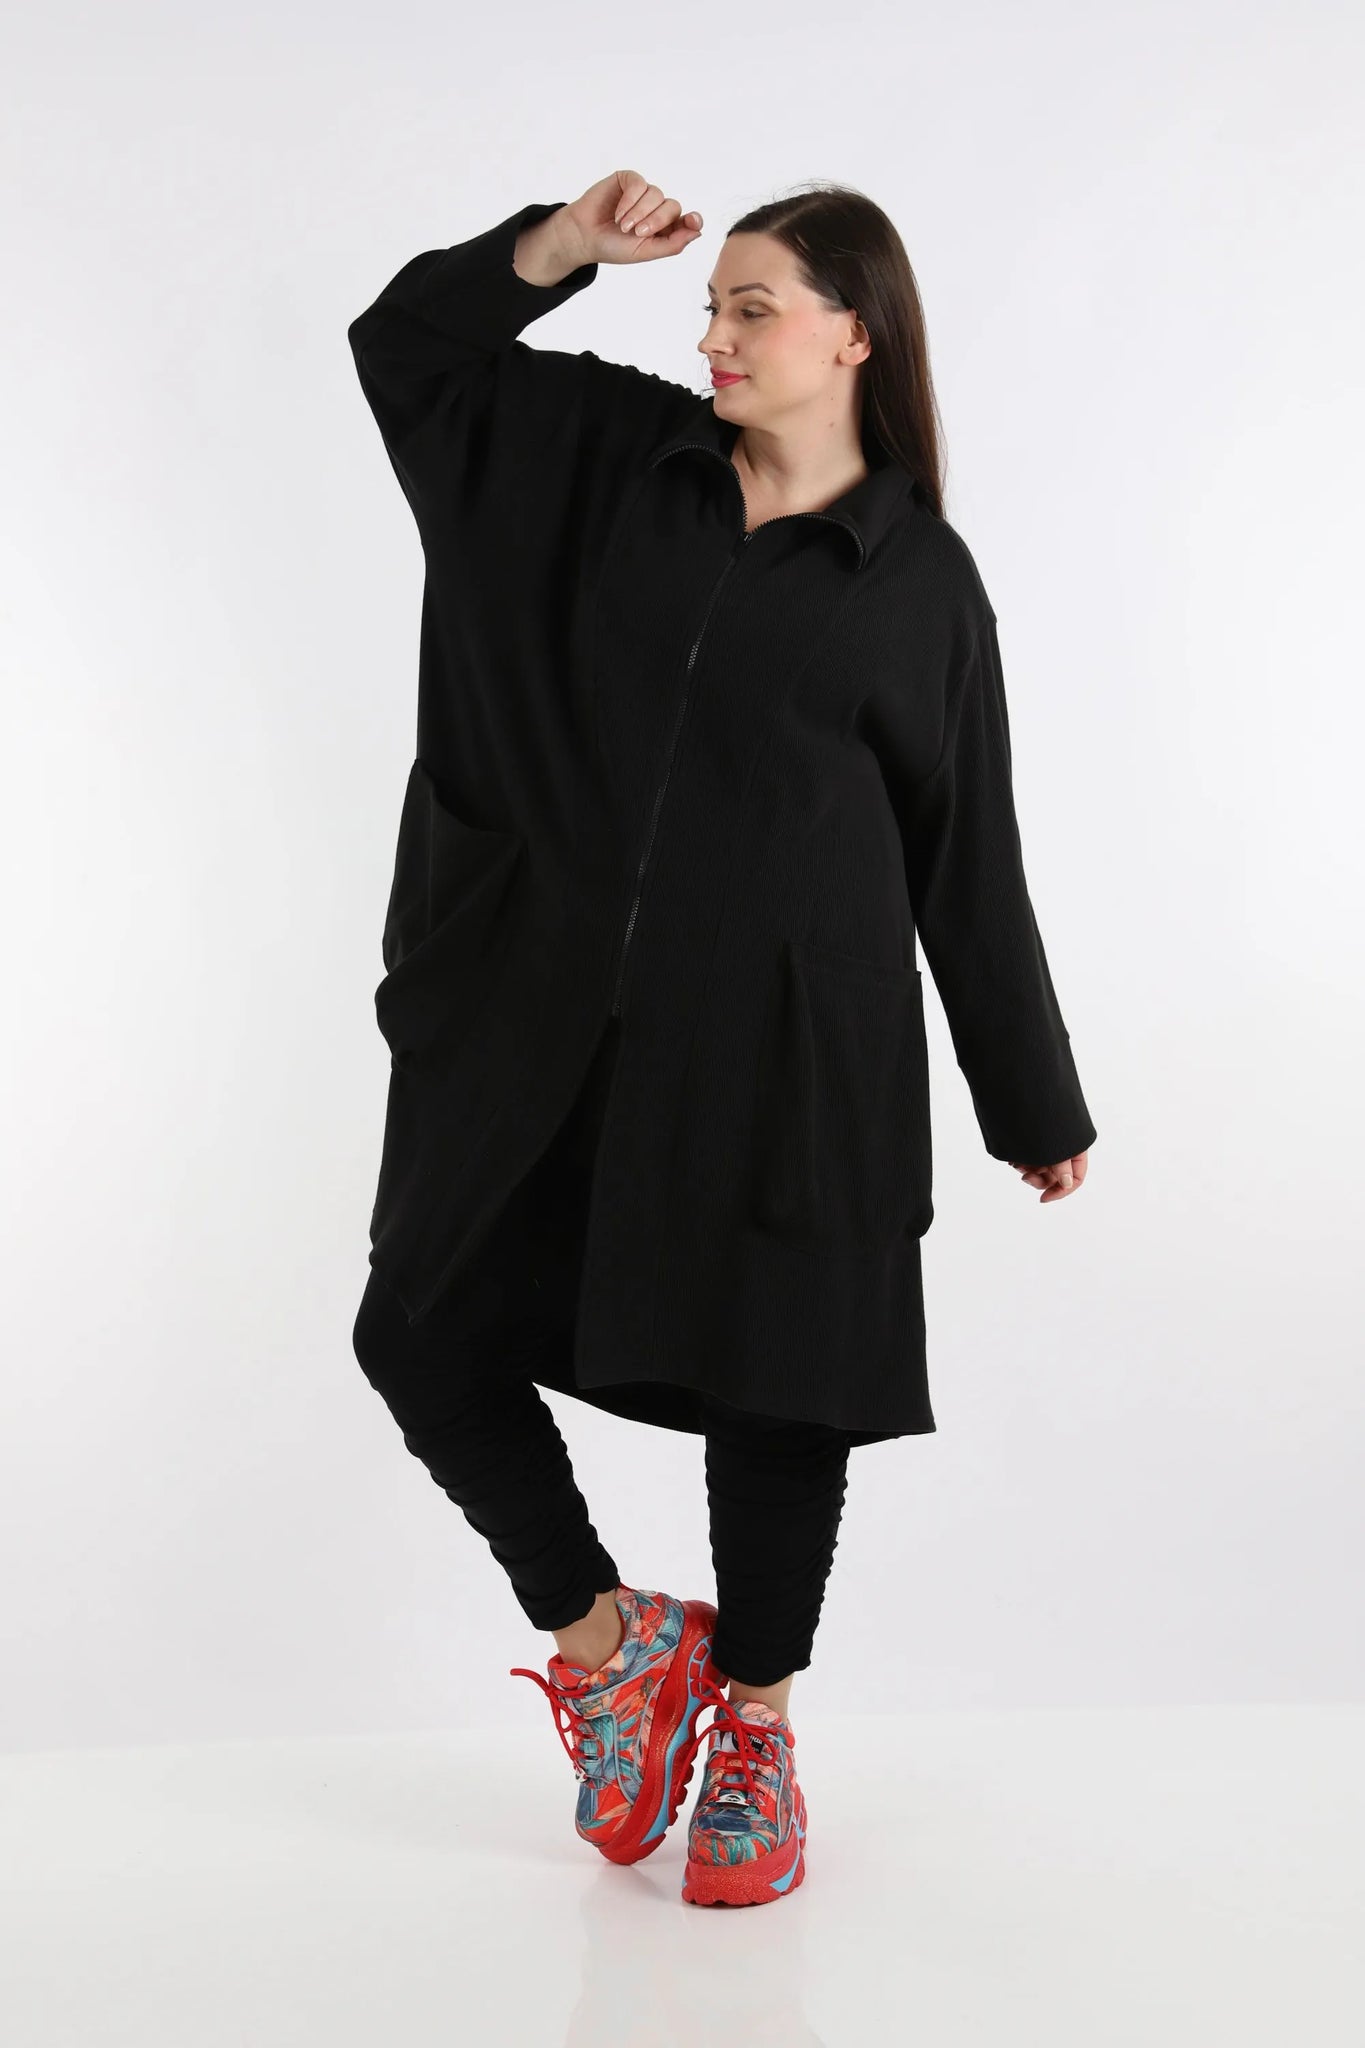 Mantel von AKH Fashion aus Baumwolle in gerundeter Form, 1252.02276, Schwarz, Ausgefallen